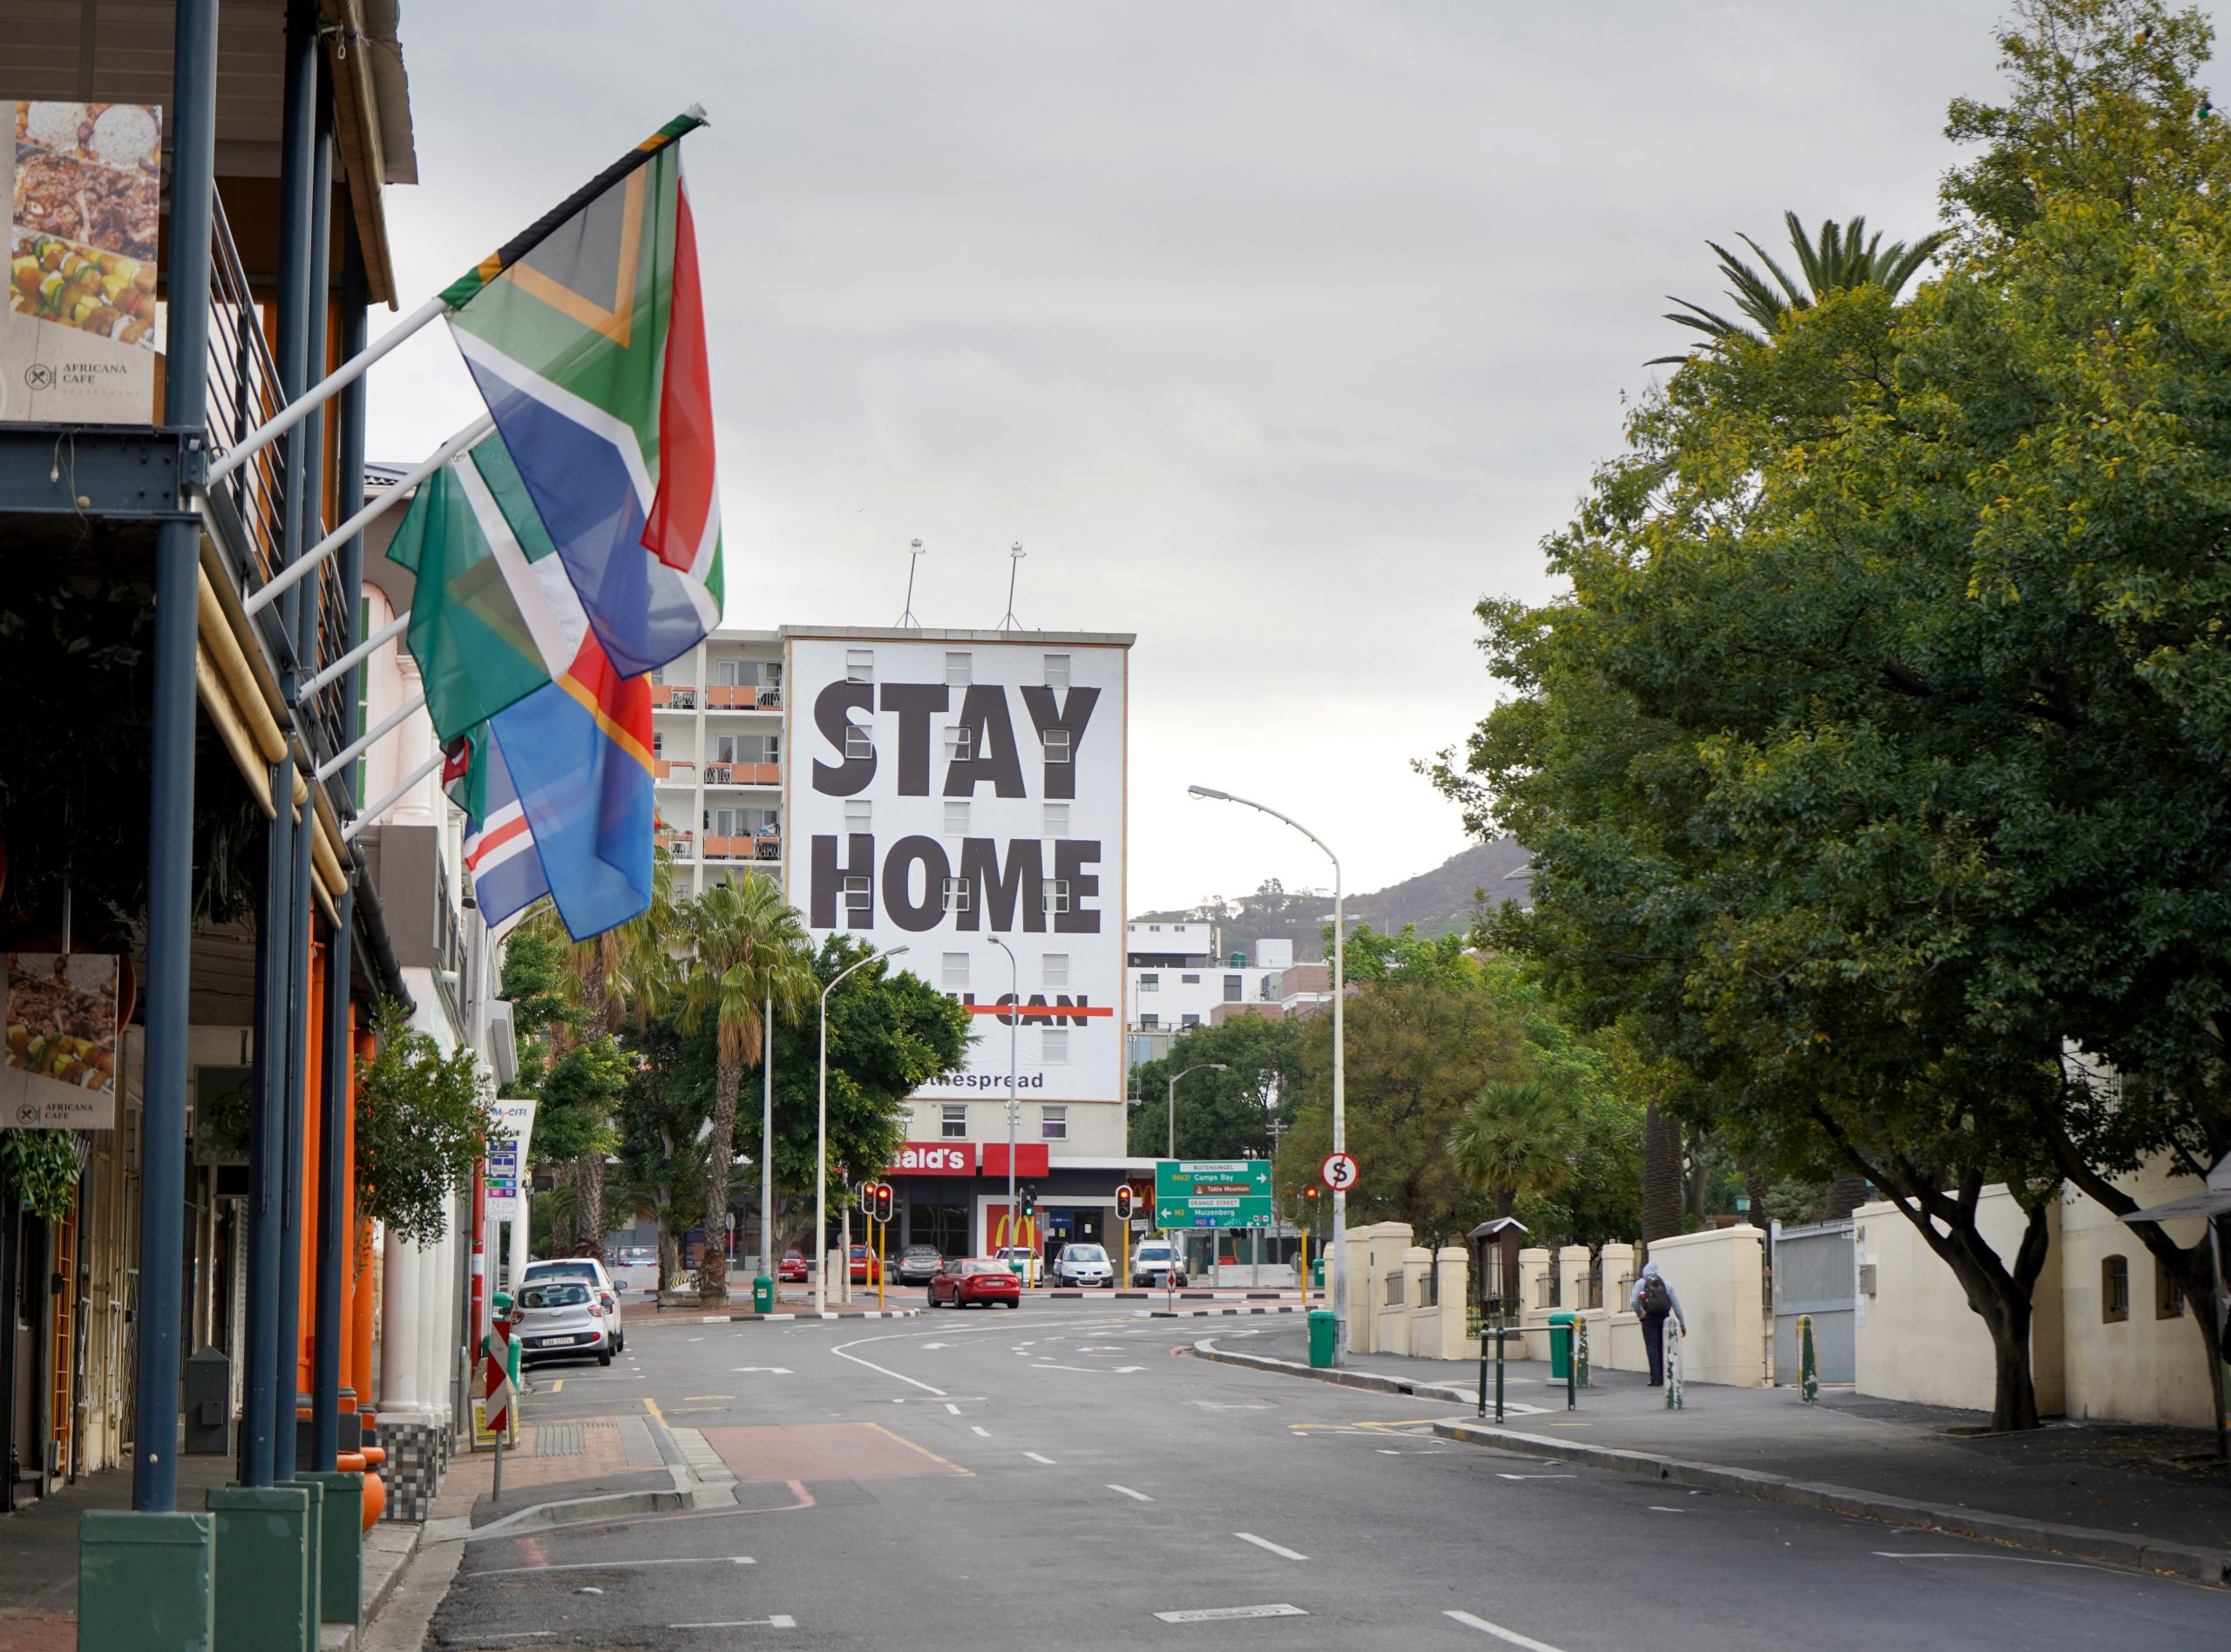 Tyhjä katu ja Stay at home -teksti Kapkaupungissa.